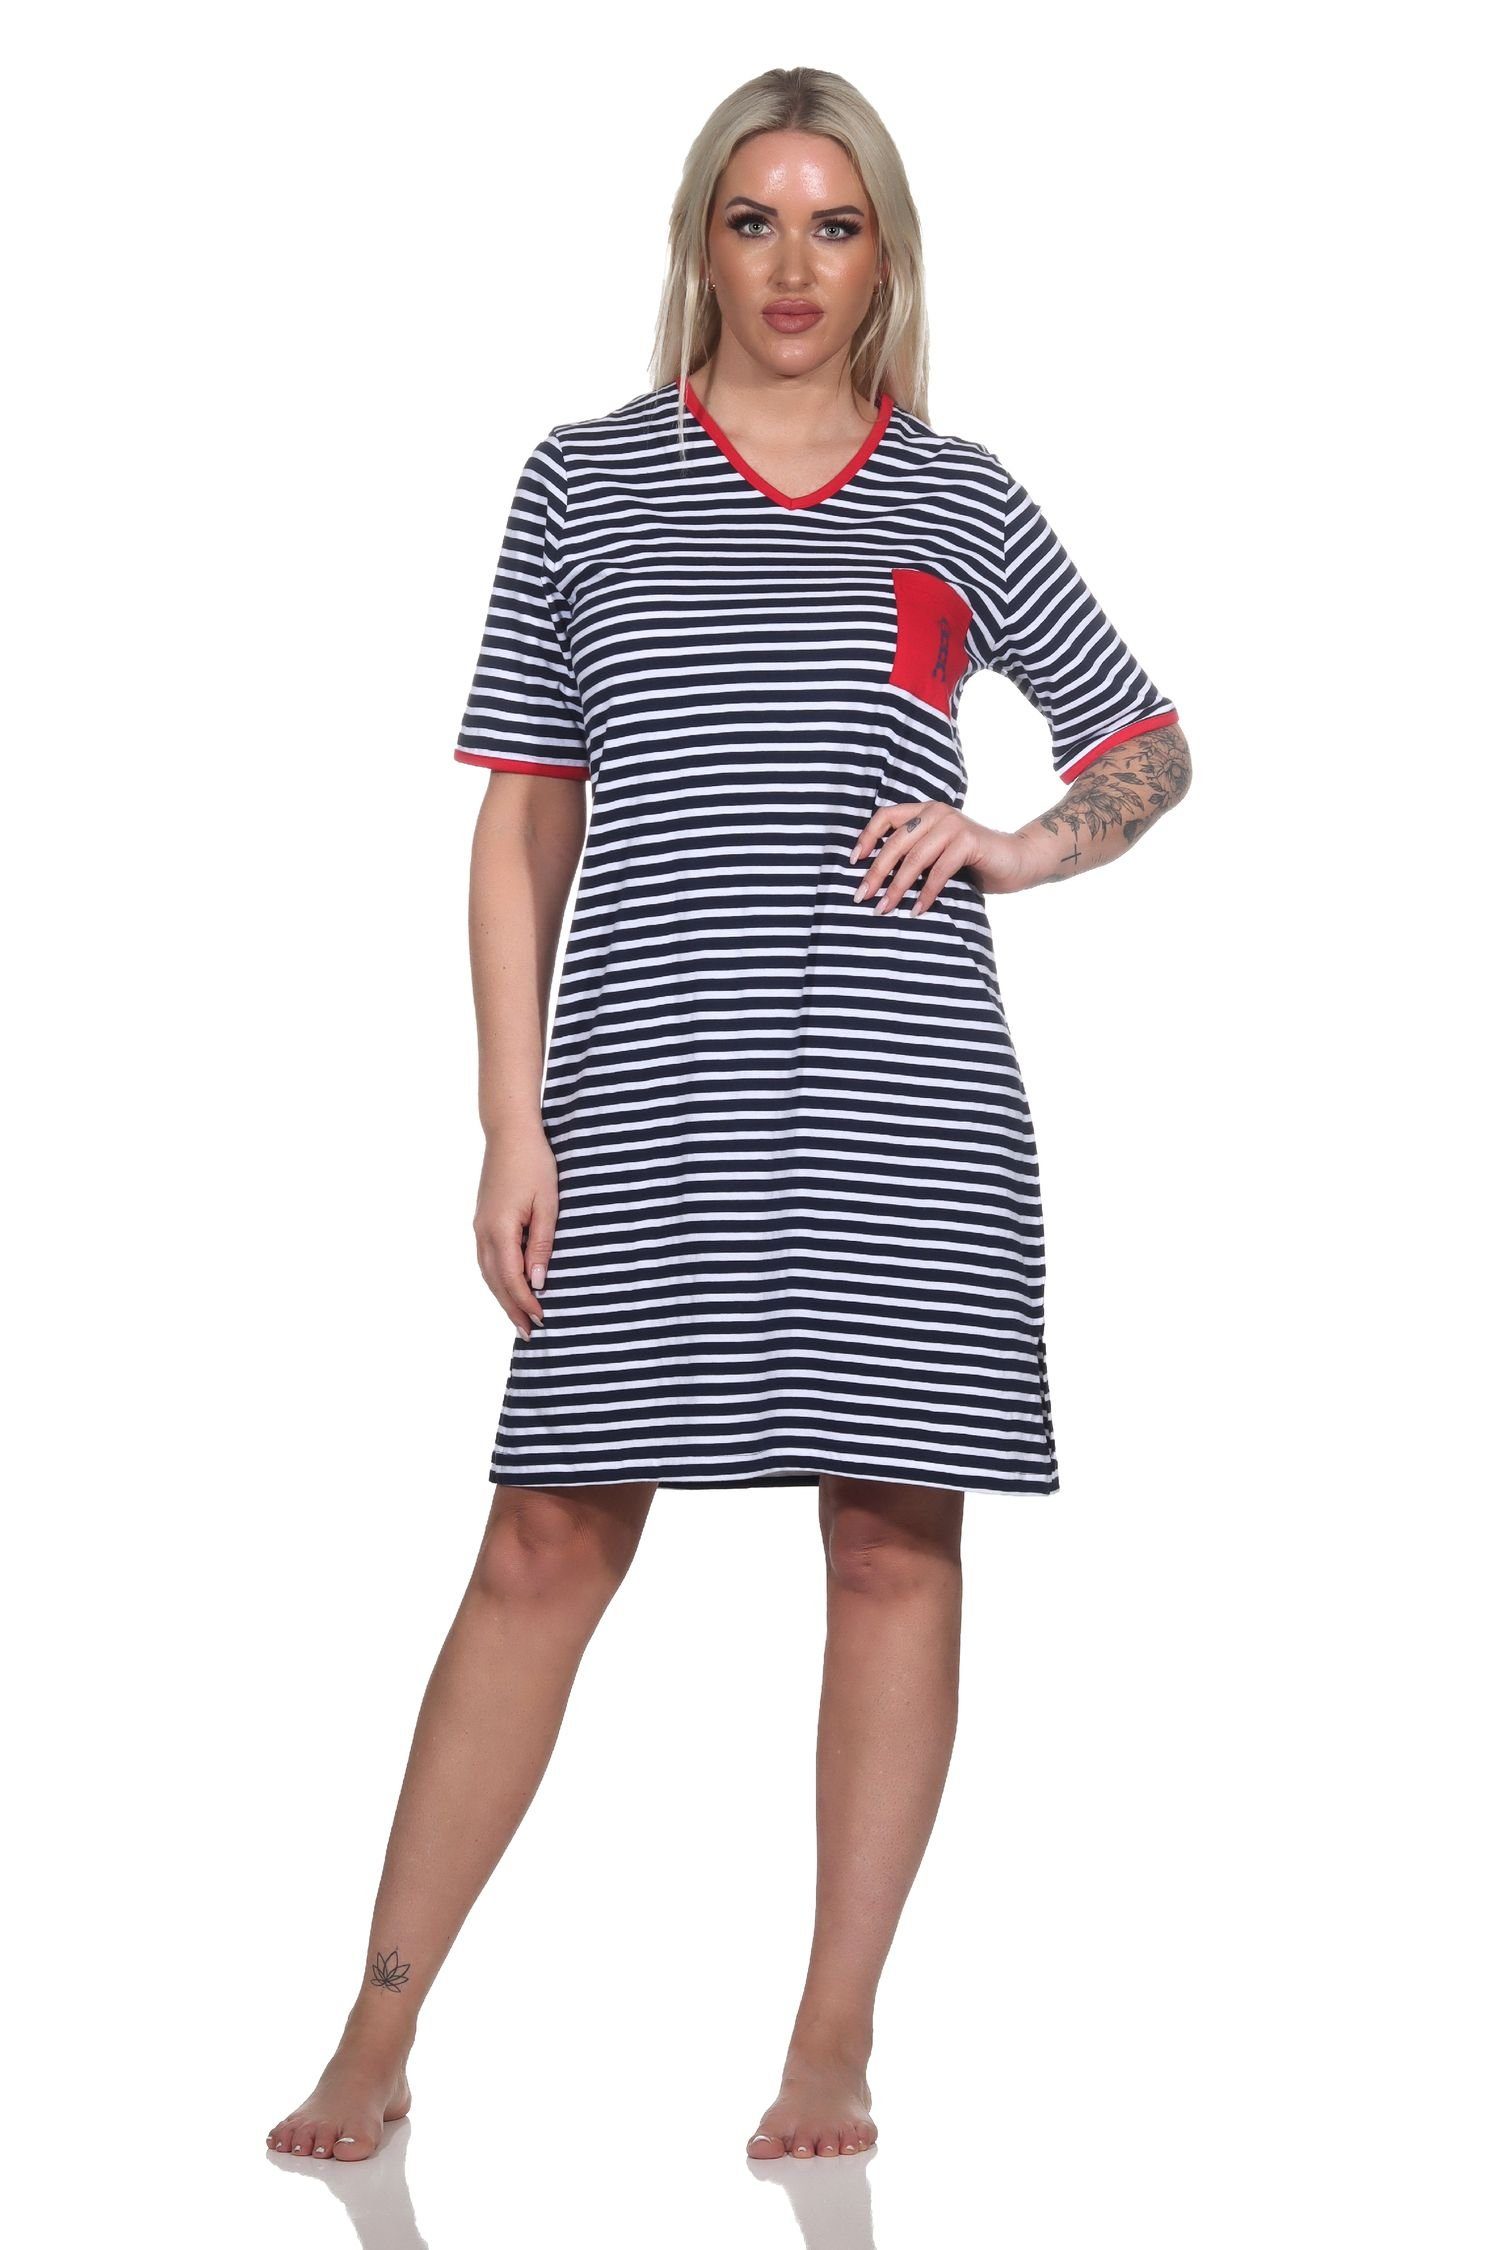 Normann Nachthemd Damen Kurzarm Nachthemd in maritimer Optik und mit Leuchtturm Motiv marine